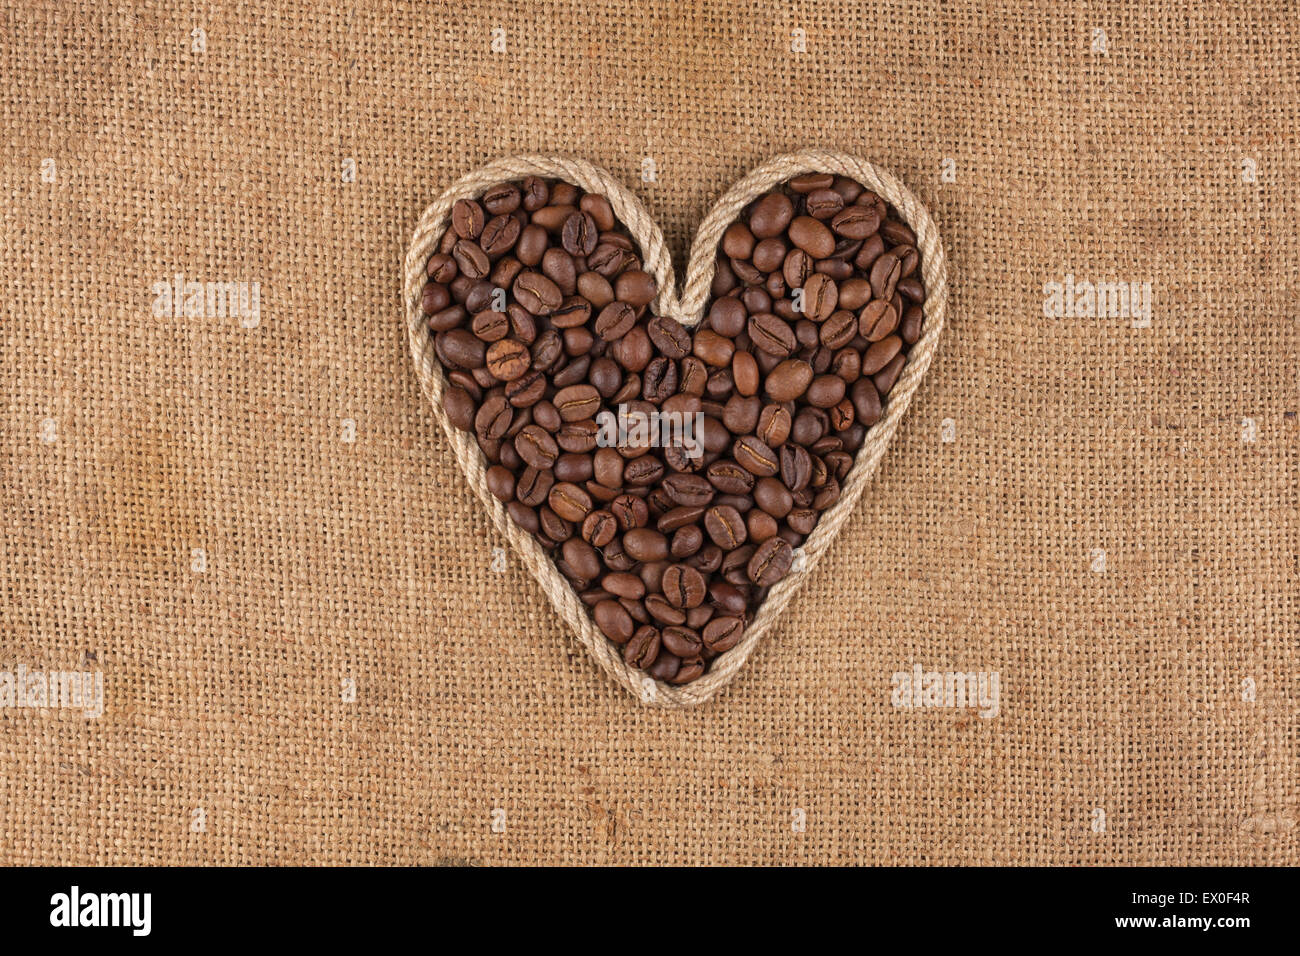 Herz aus Seil mit Kaffeebohnen liegen auf Sackleinen, mit Platz für text Stockfoto